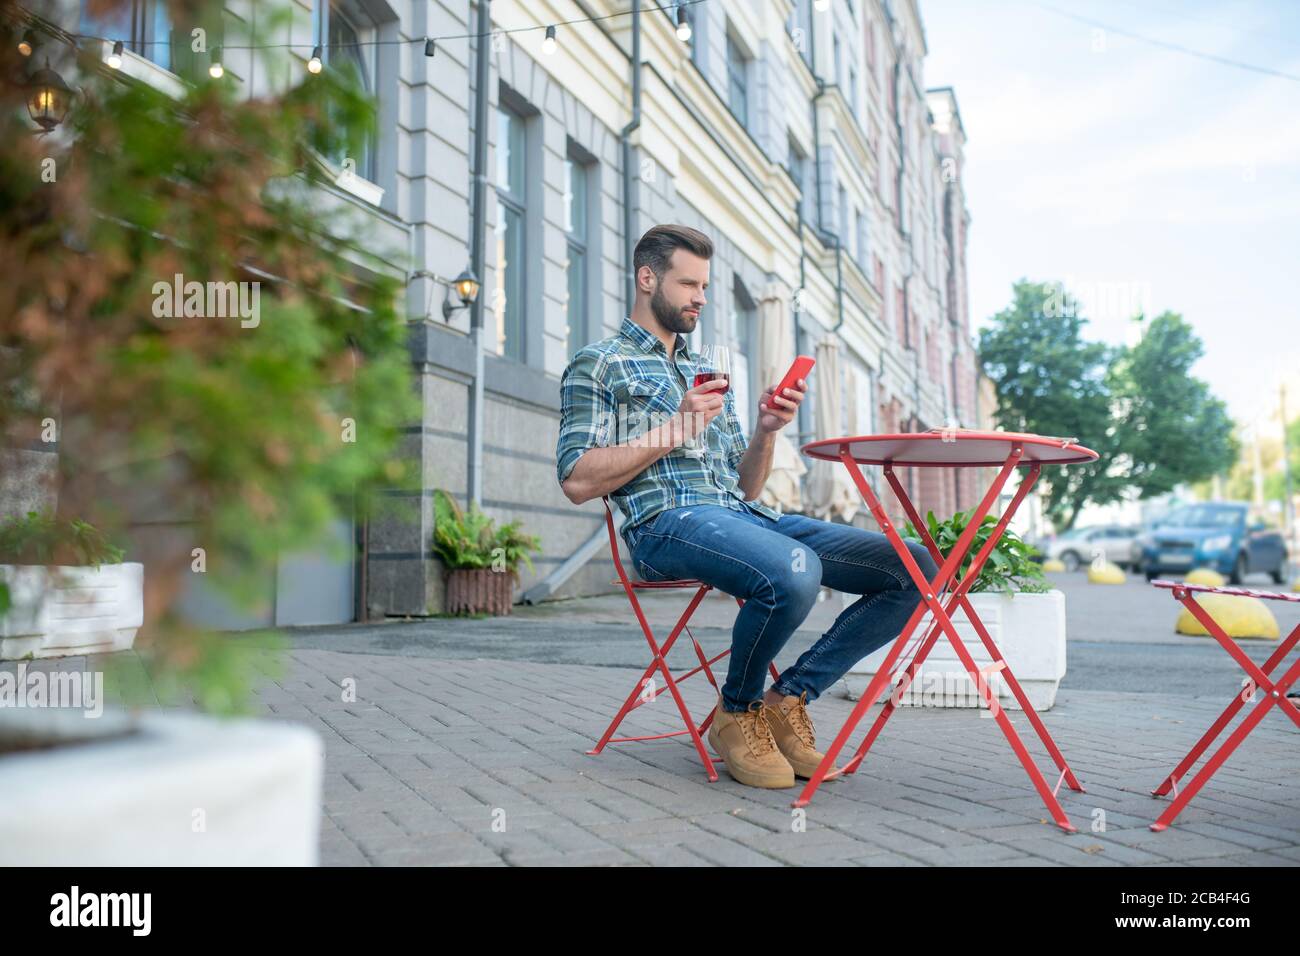 Beau homme à barbe, joyeux verre de vin rouge, en vérifiant son téléphone dans un café en plein air Banque D'Images